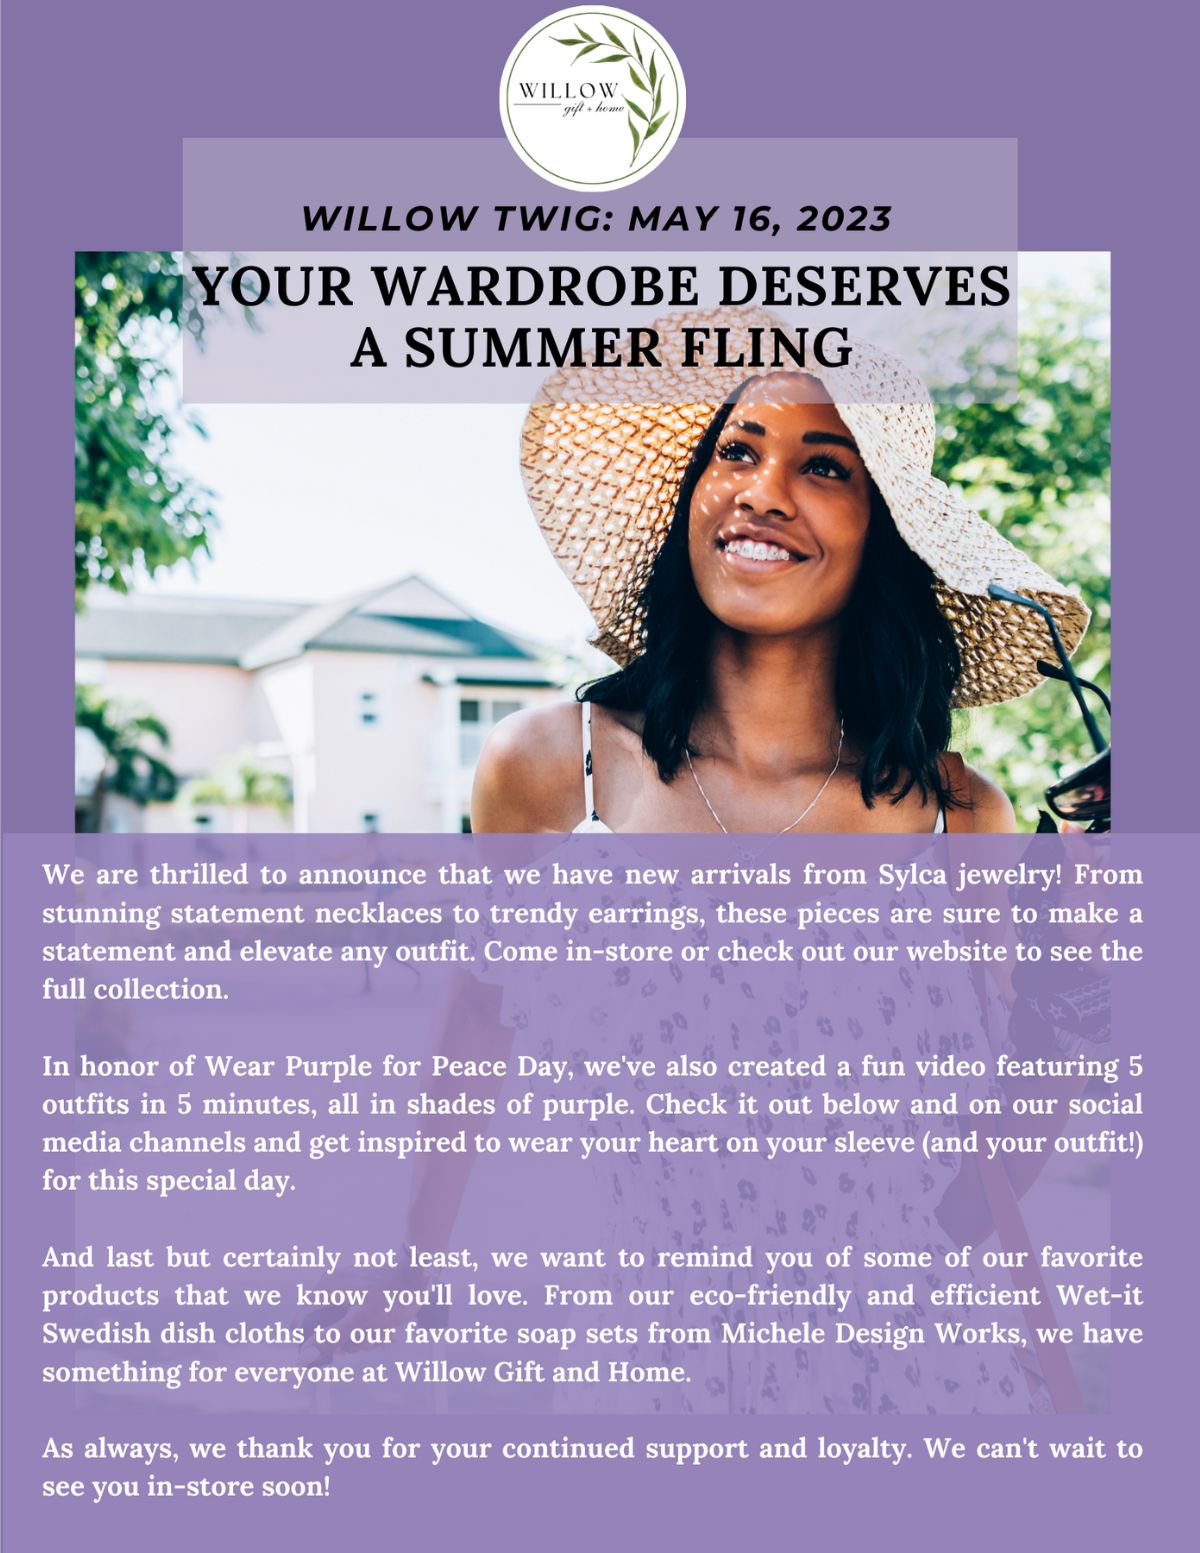 Your Wardrobe deserves a summer fling